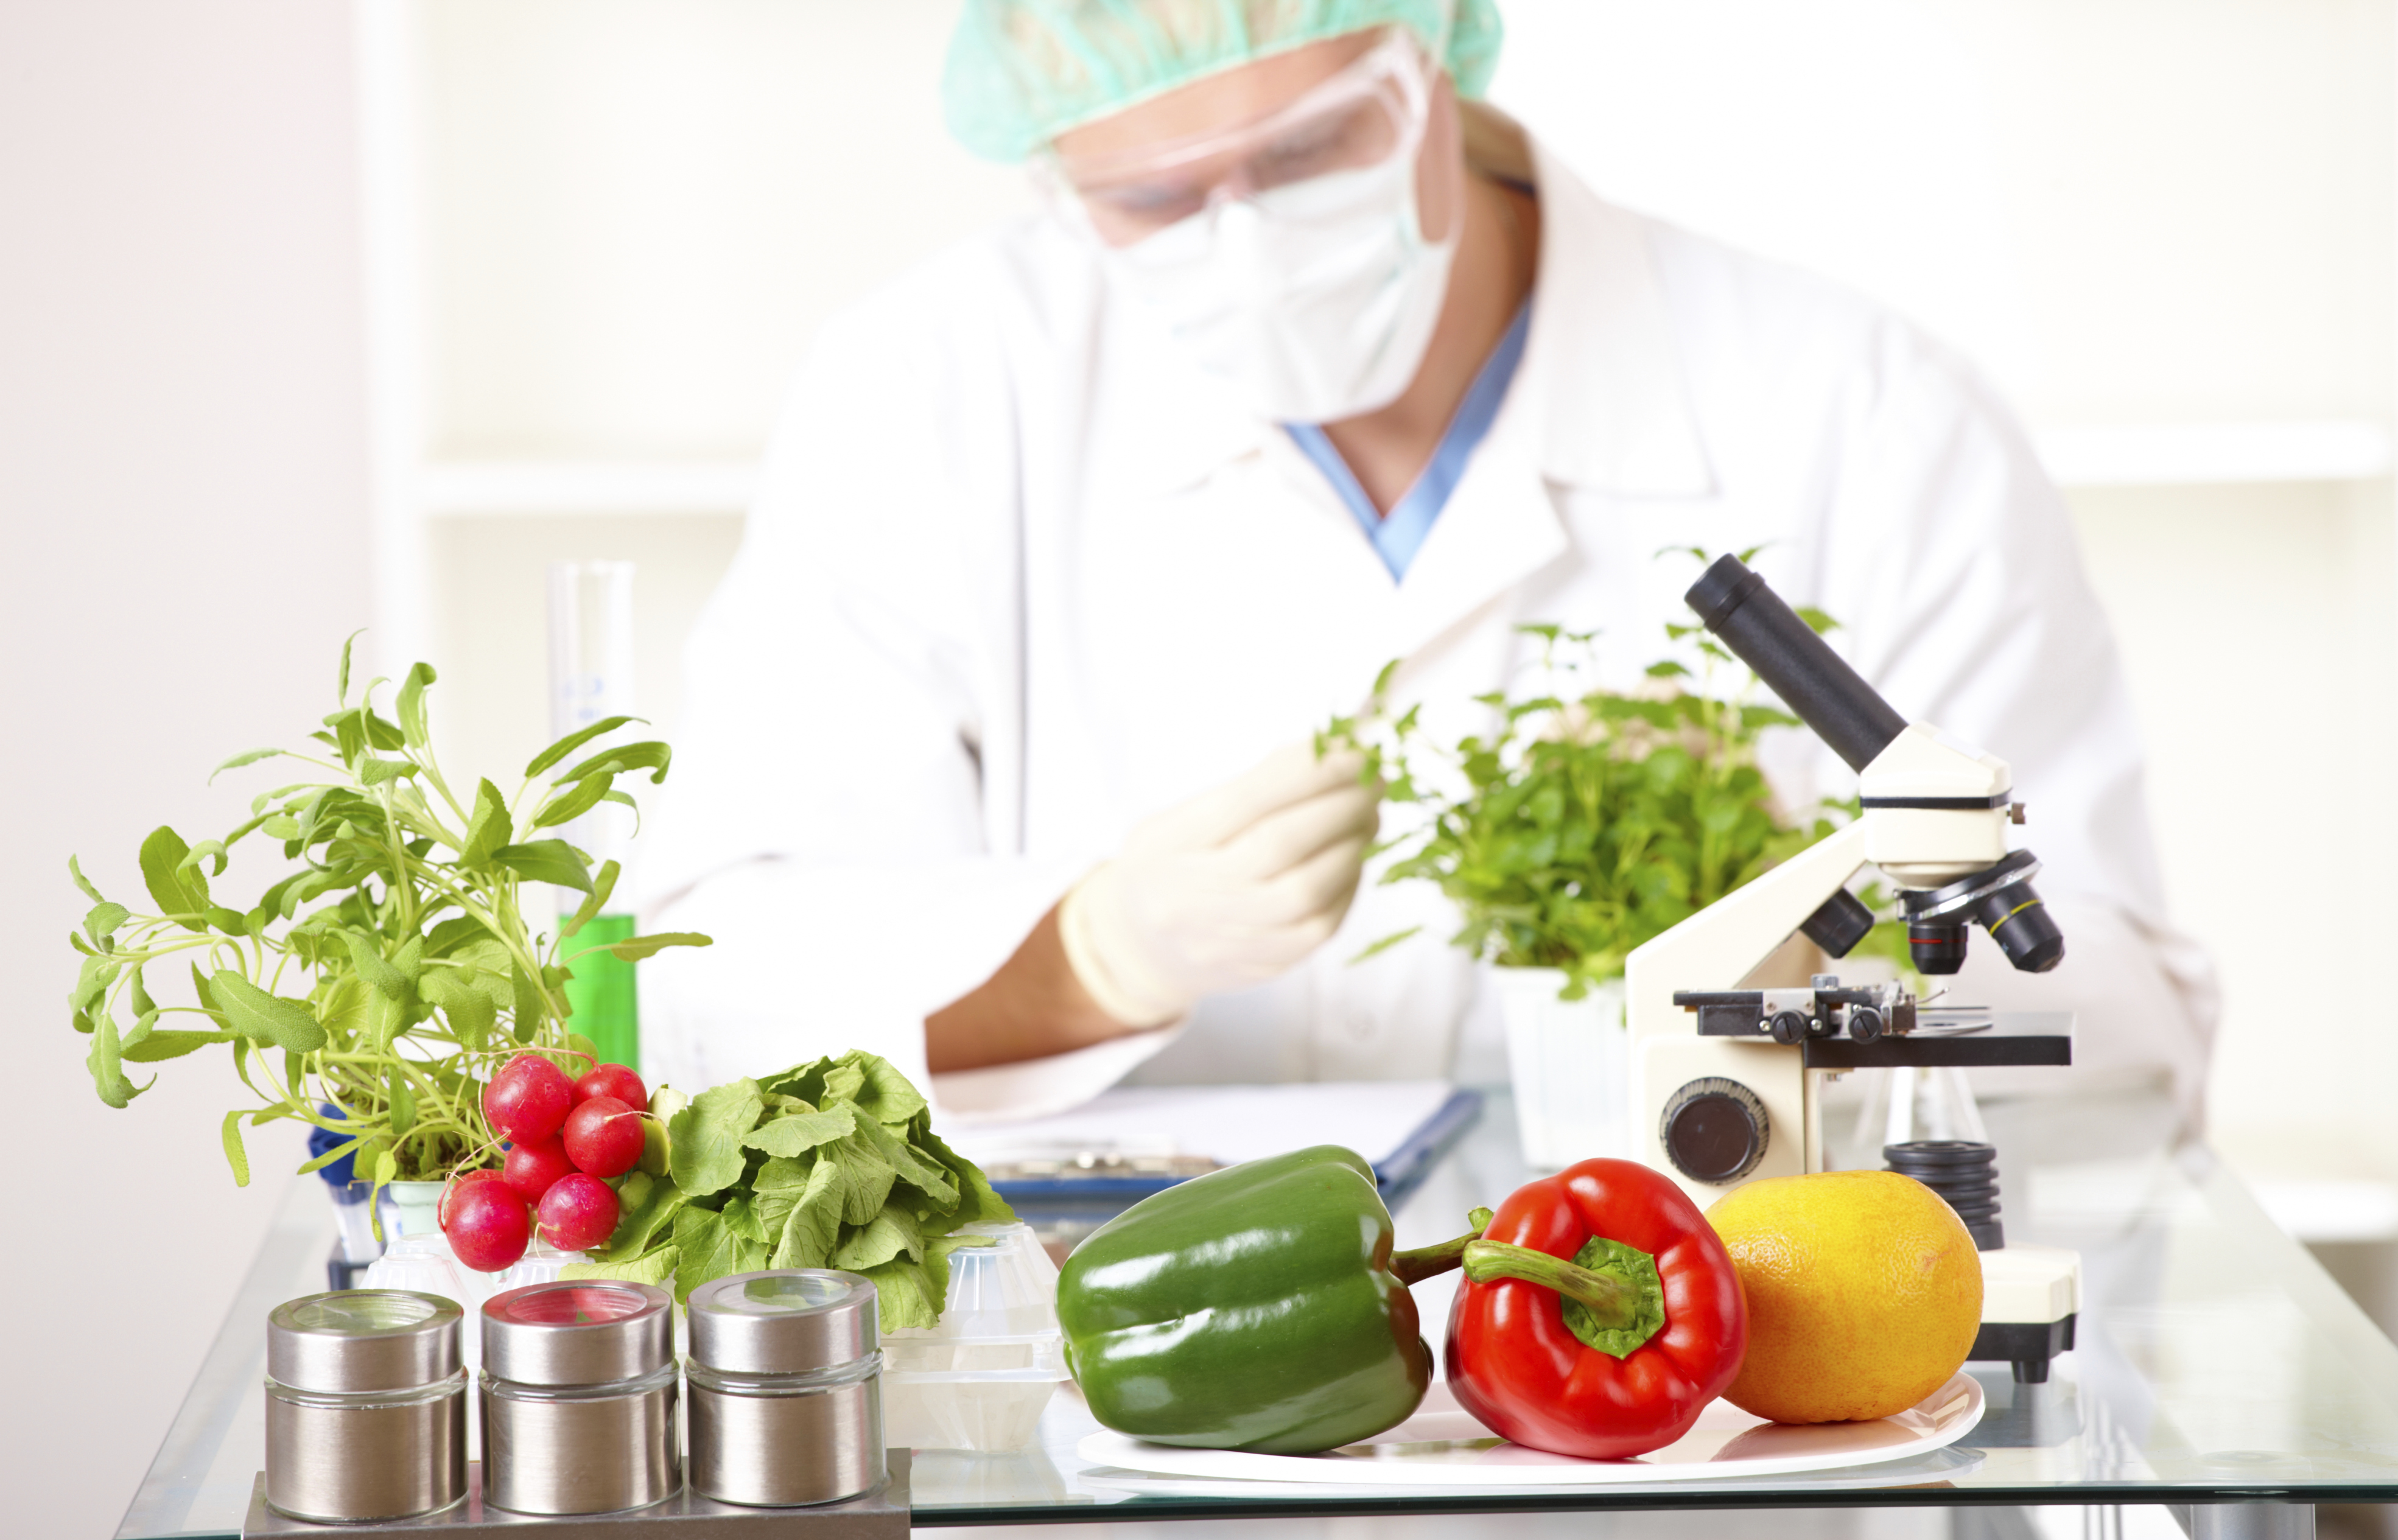 Оценка качества пищевых продуктов. Биотехнология пищевых продуктов. Экспертиза овощей. Экспертиза пищевых продуктов. Инженерия пищевых продуктов.